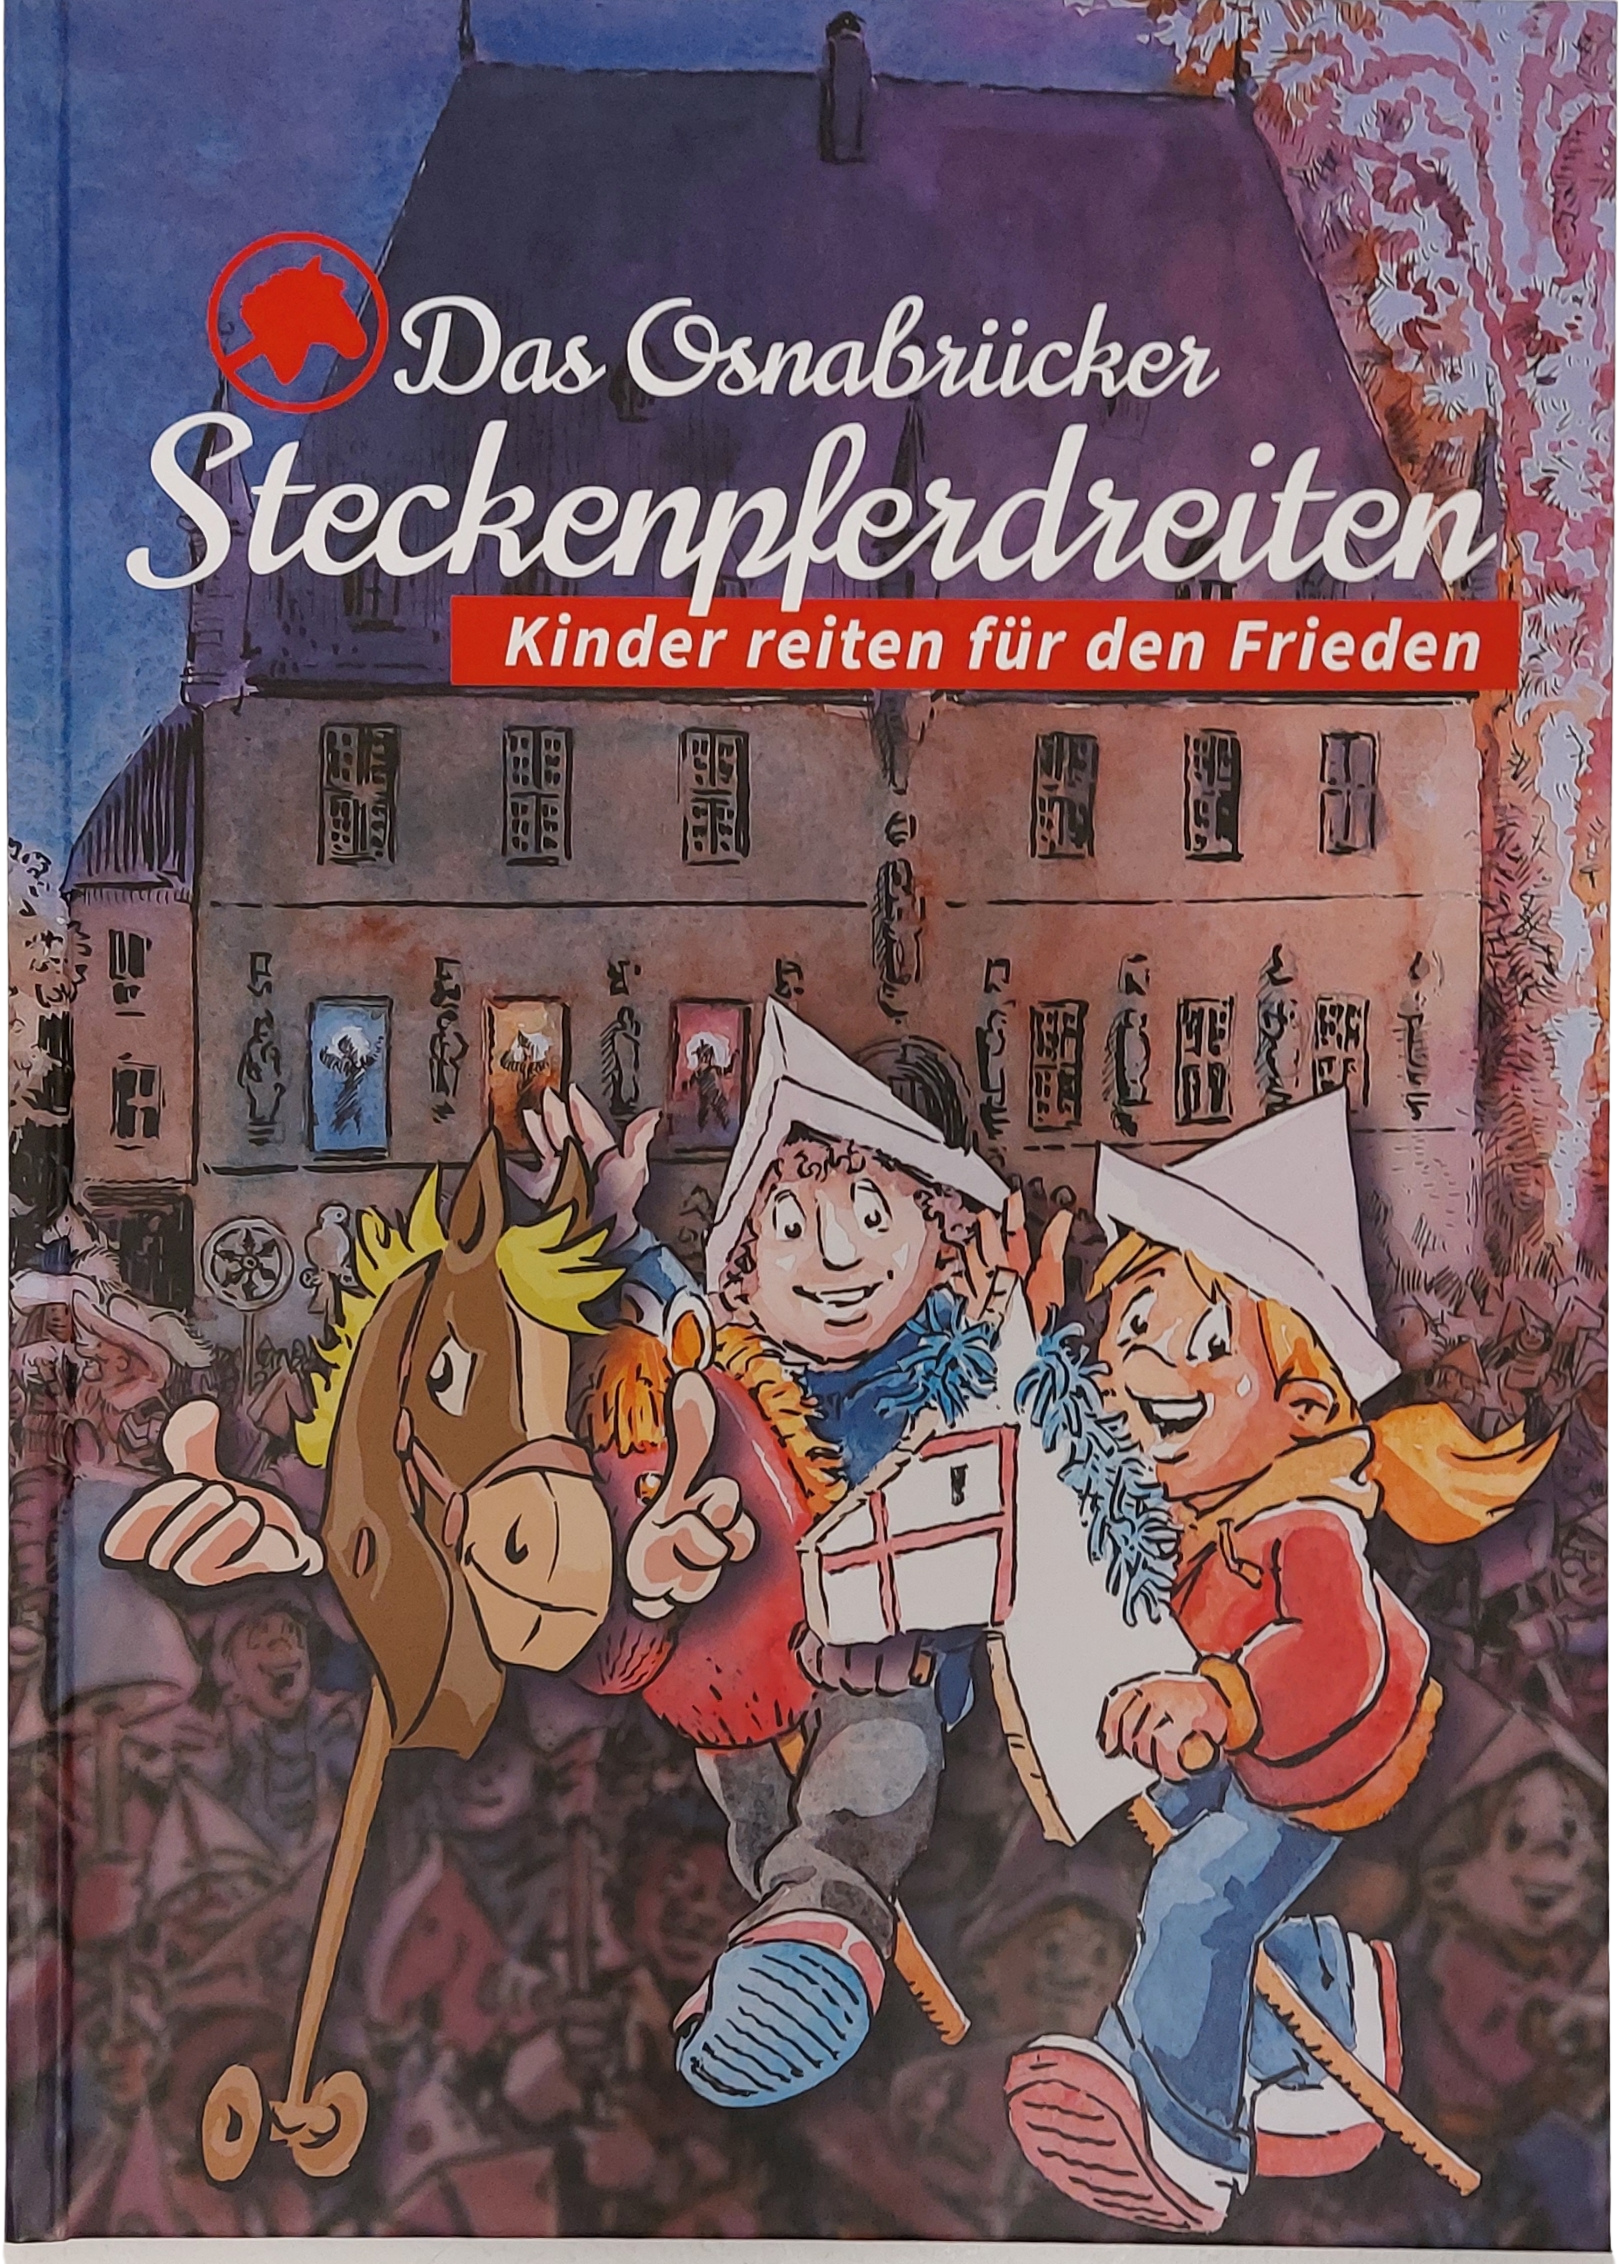 Buch: Das Osnabrücker Steckenpferdreiten - Kinder reiten für den Frieden